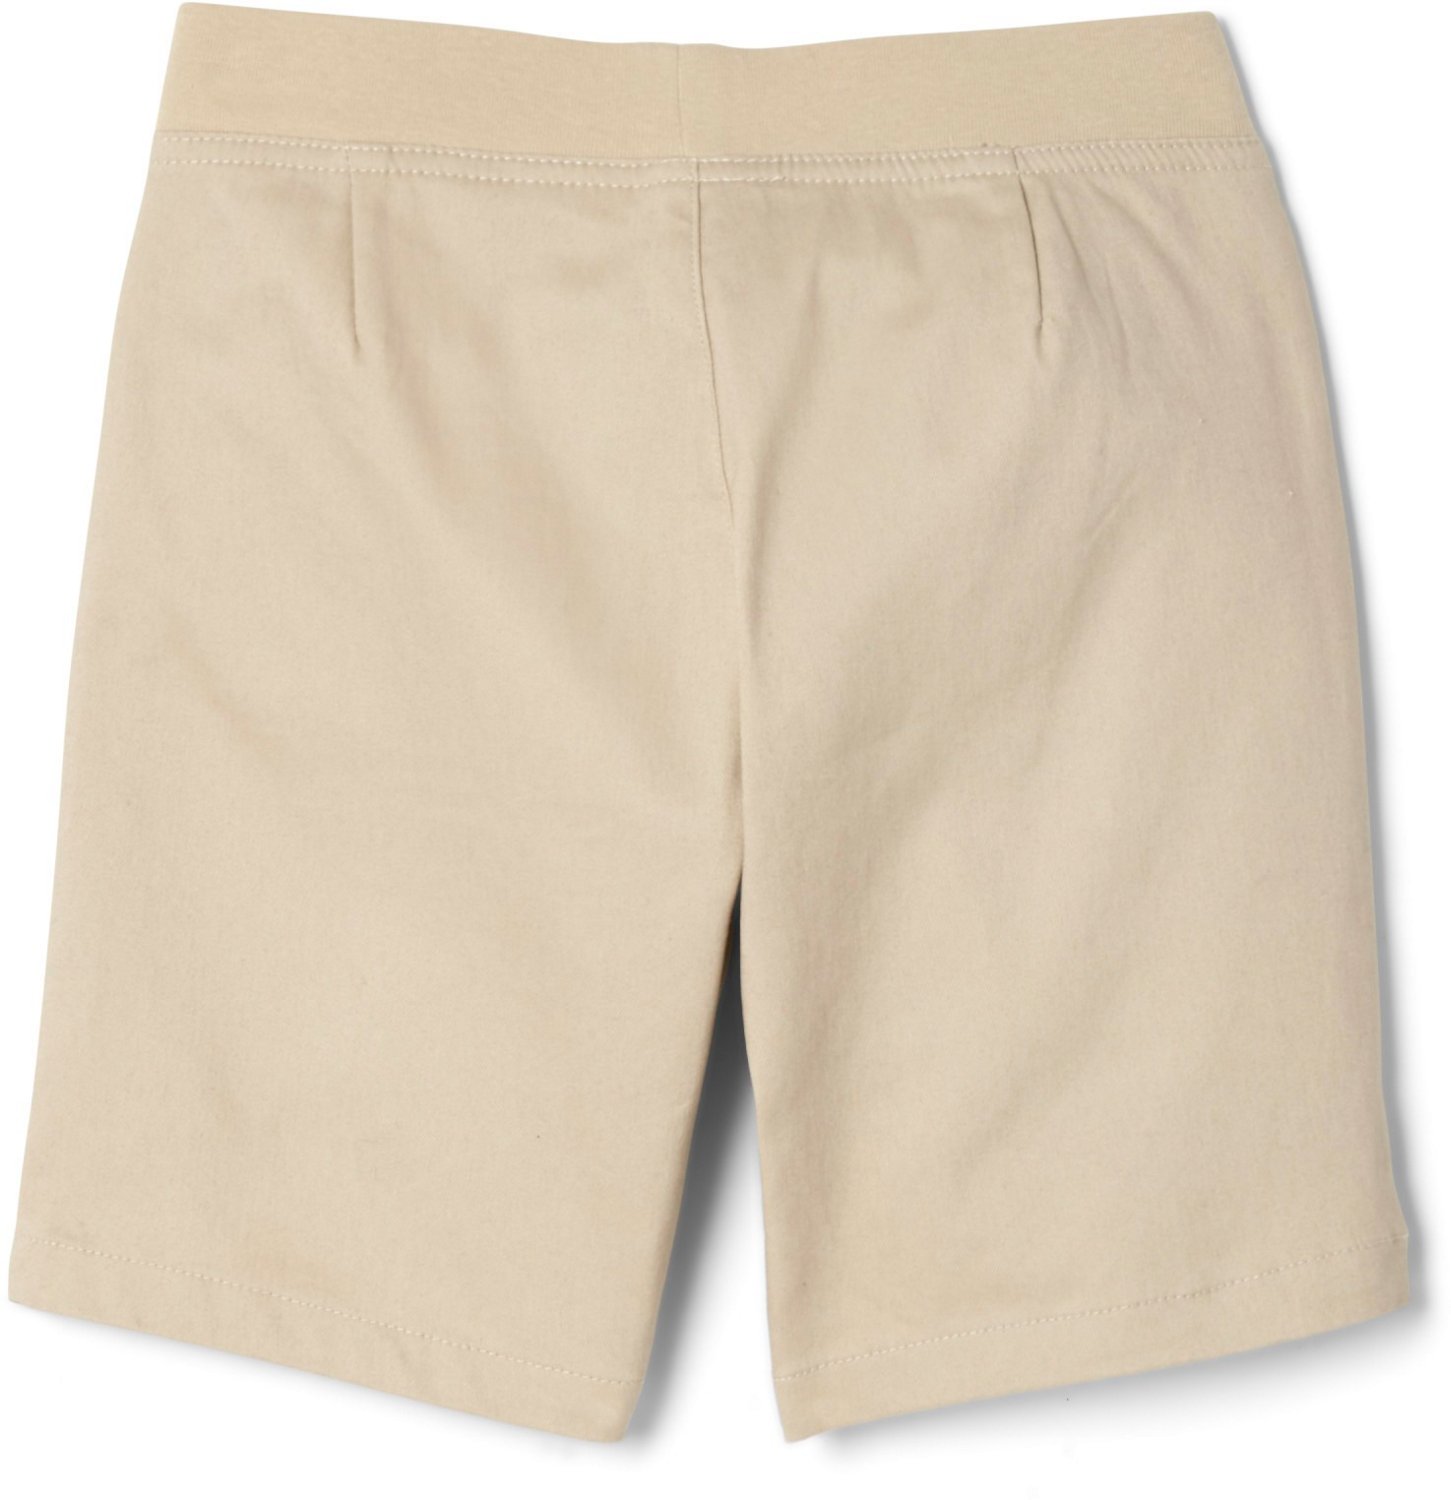 Details about   Old Navy Boys Uniform Dress Shorts 8 10 12 14 Khaki 'Shore Enough' Flat Front